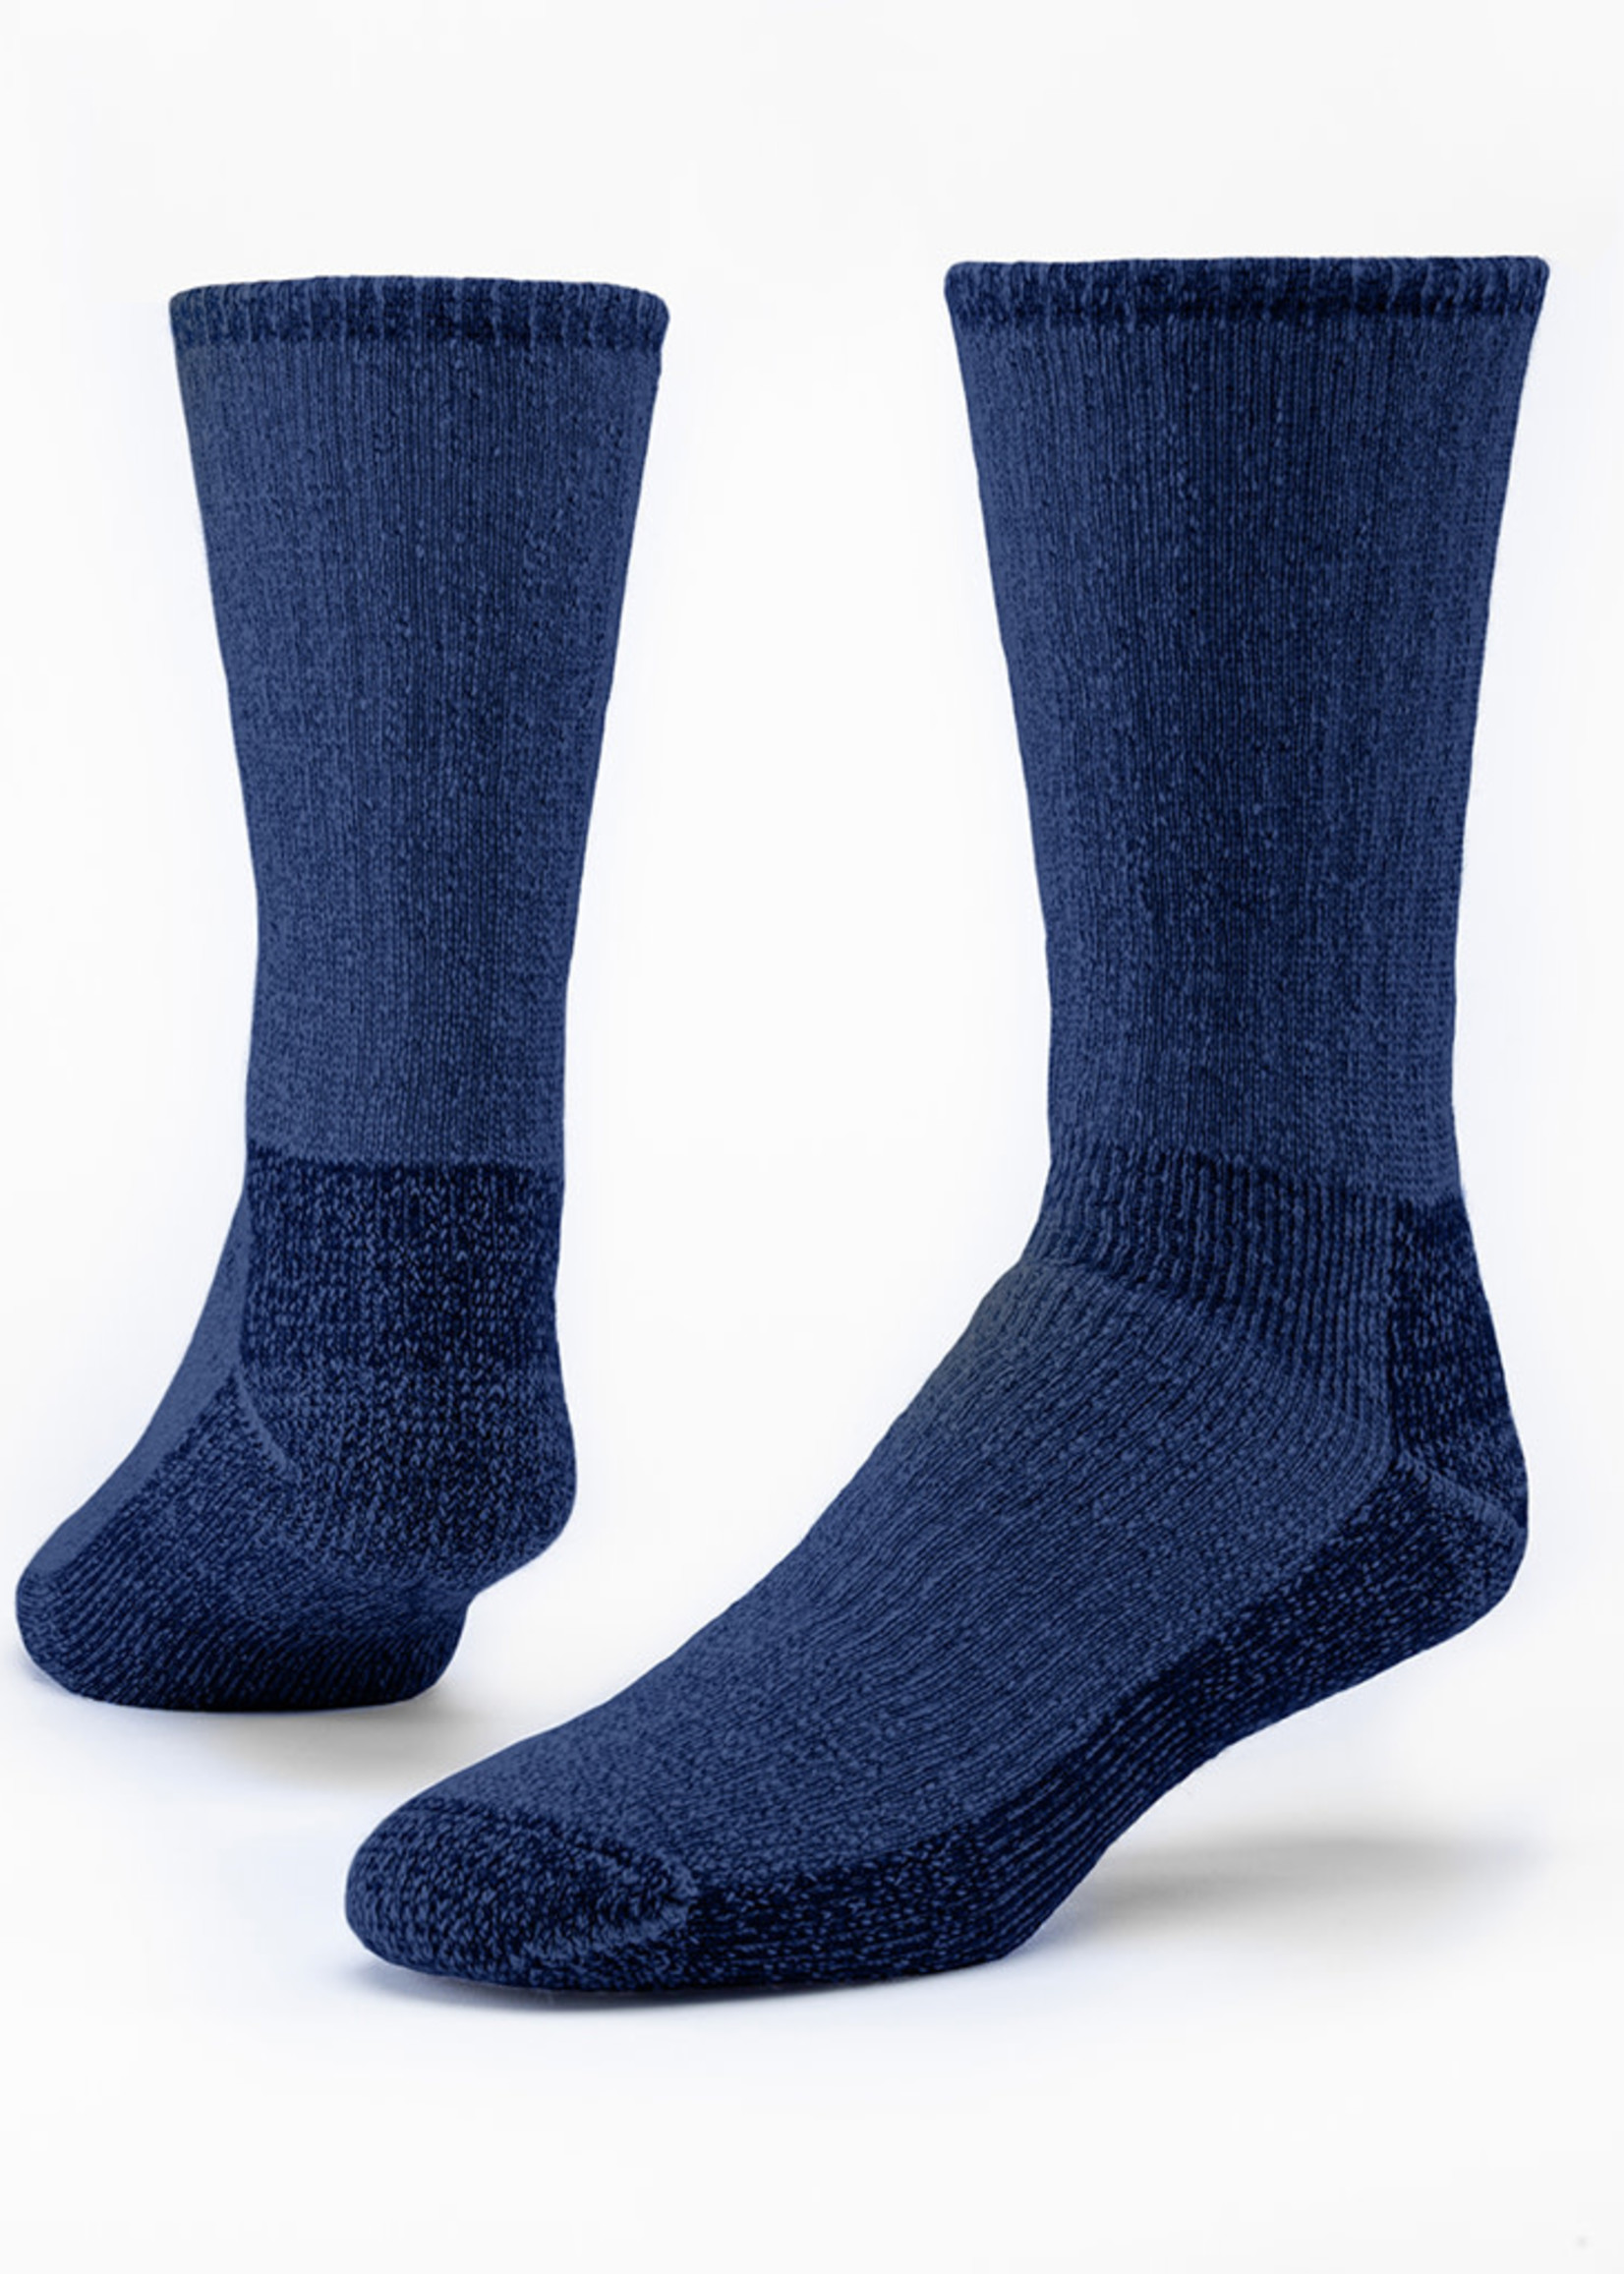 Women's Wool Hiker Socks in Dark Blue